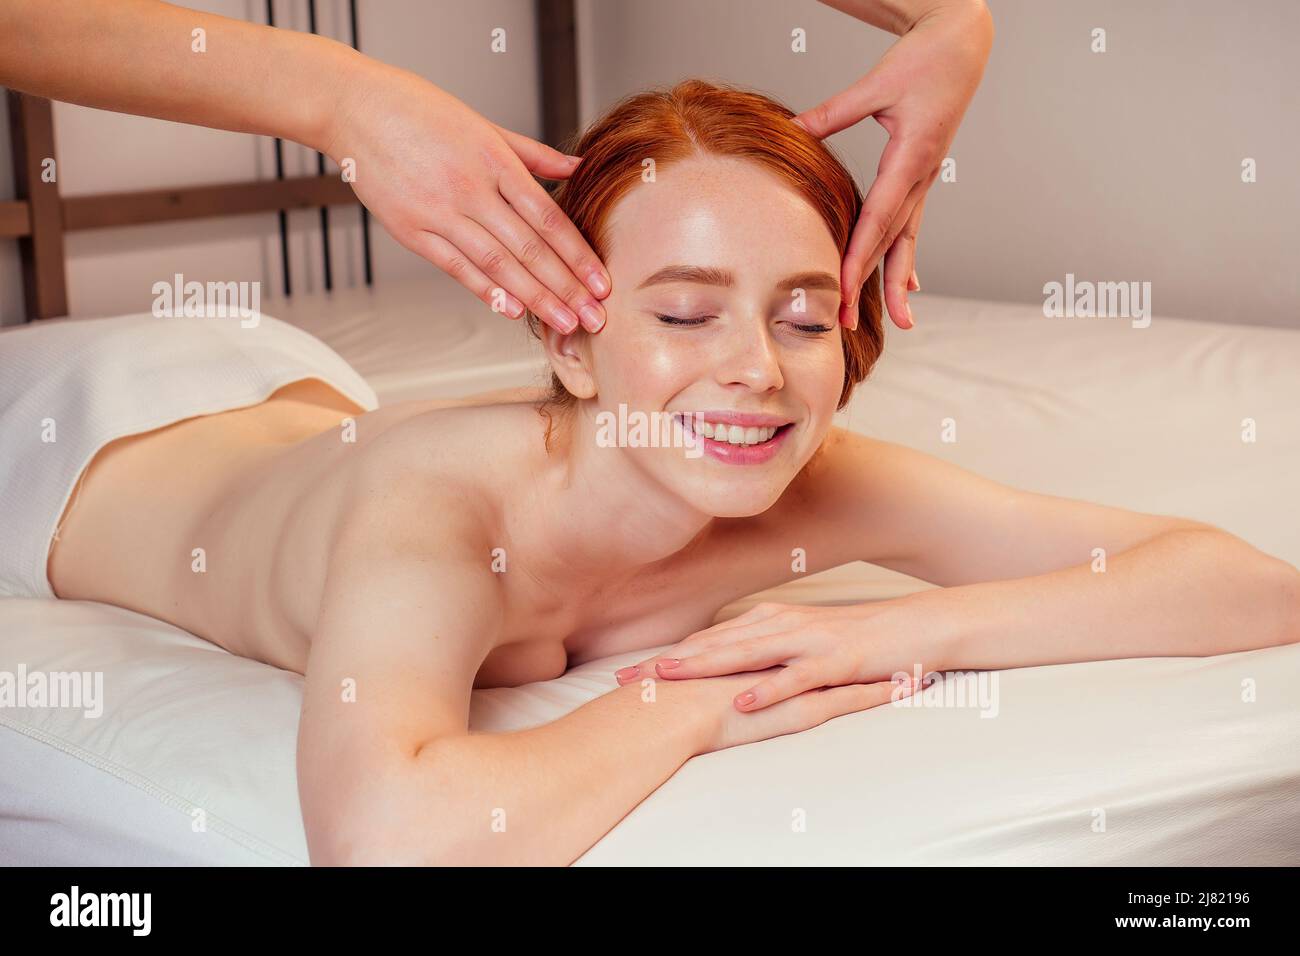 au spa, une femme au gingembre aux cheveux rouges reçoit un massage du visage Banque D'Images